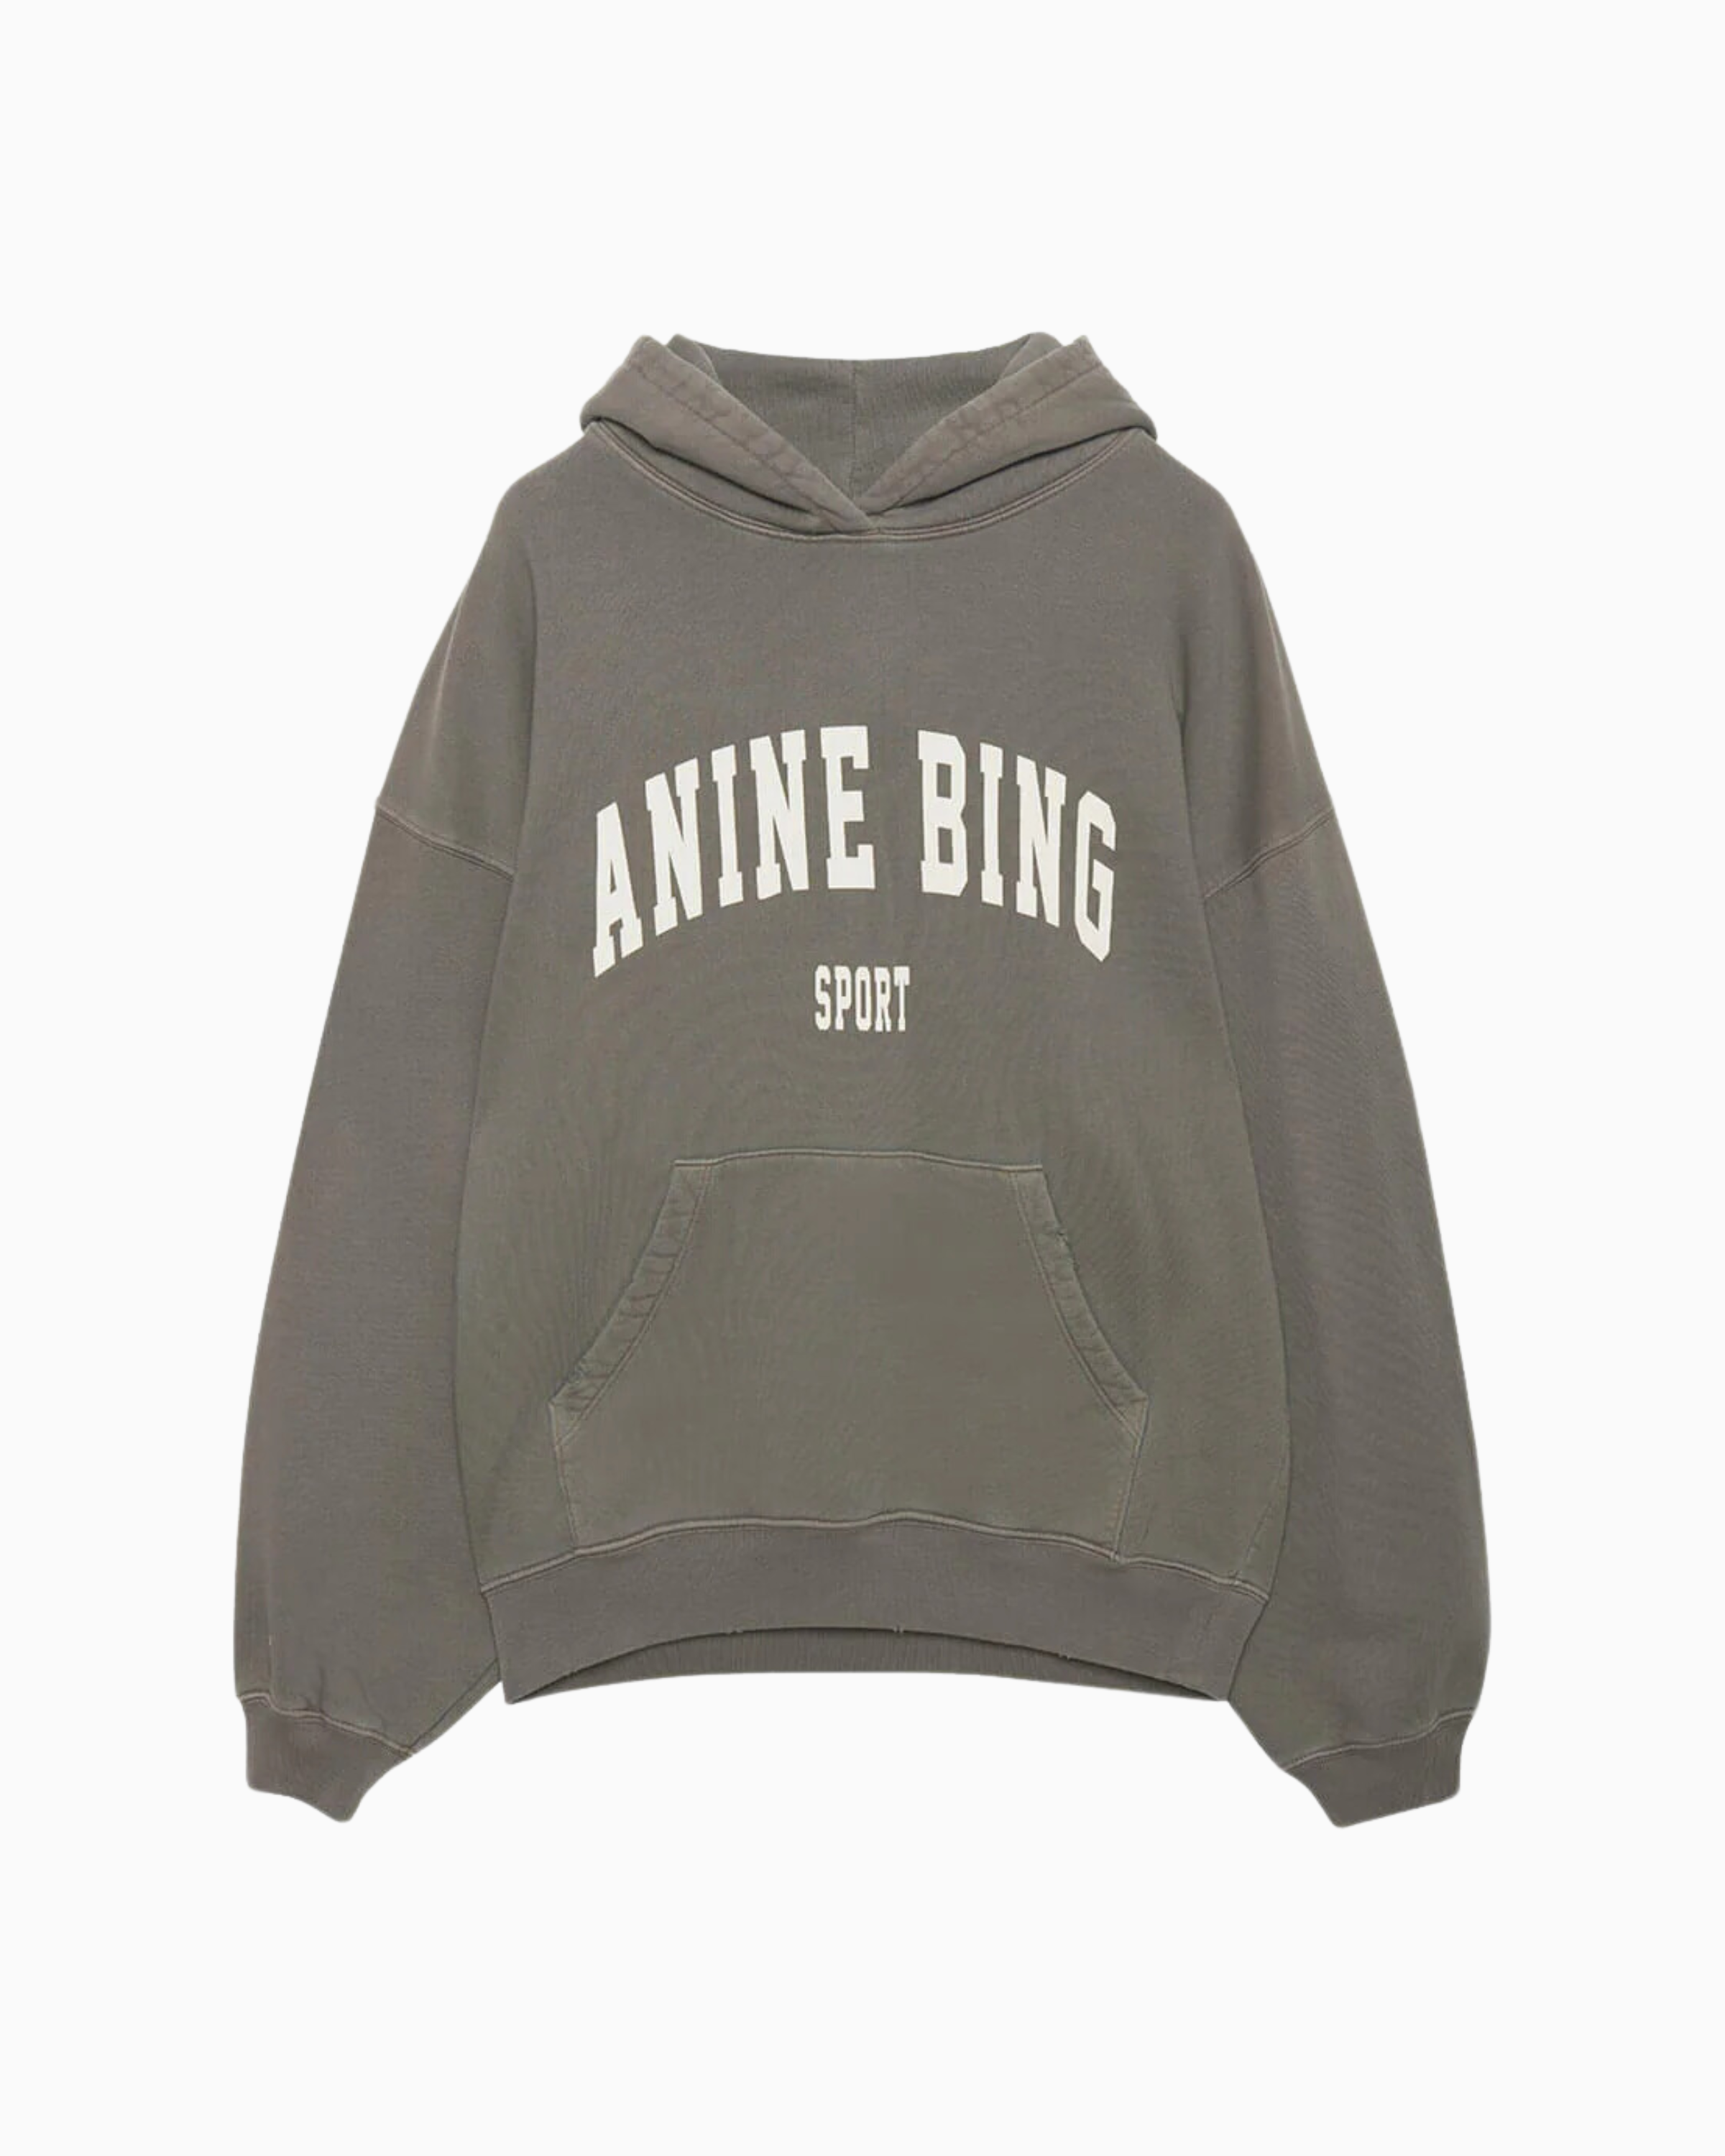 Anine Bing Harvey Sweatshirt in Dusty Olive